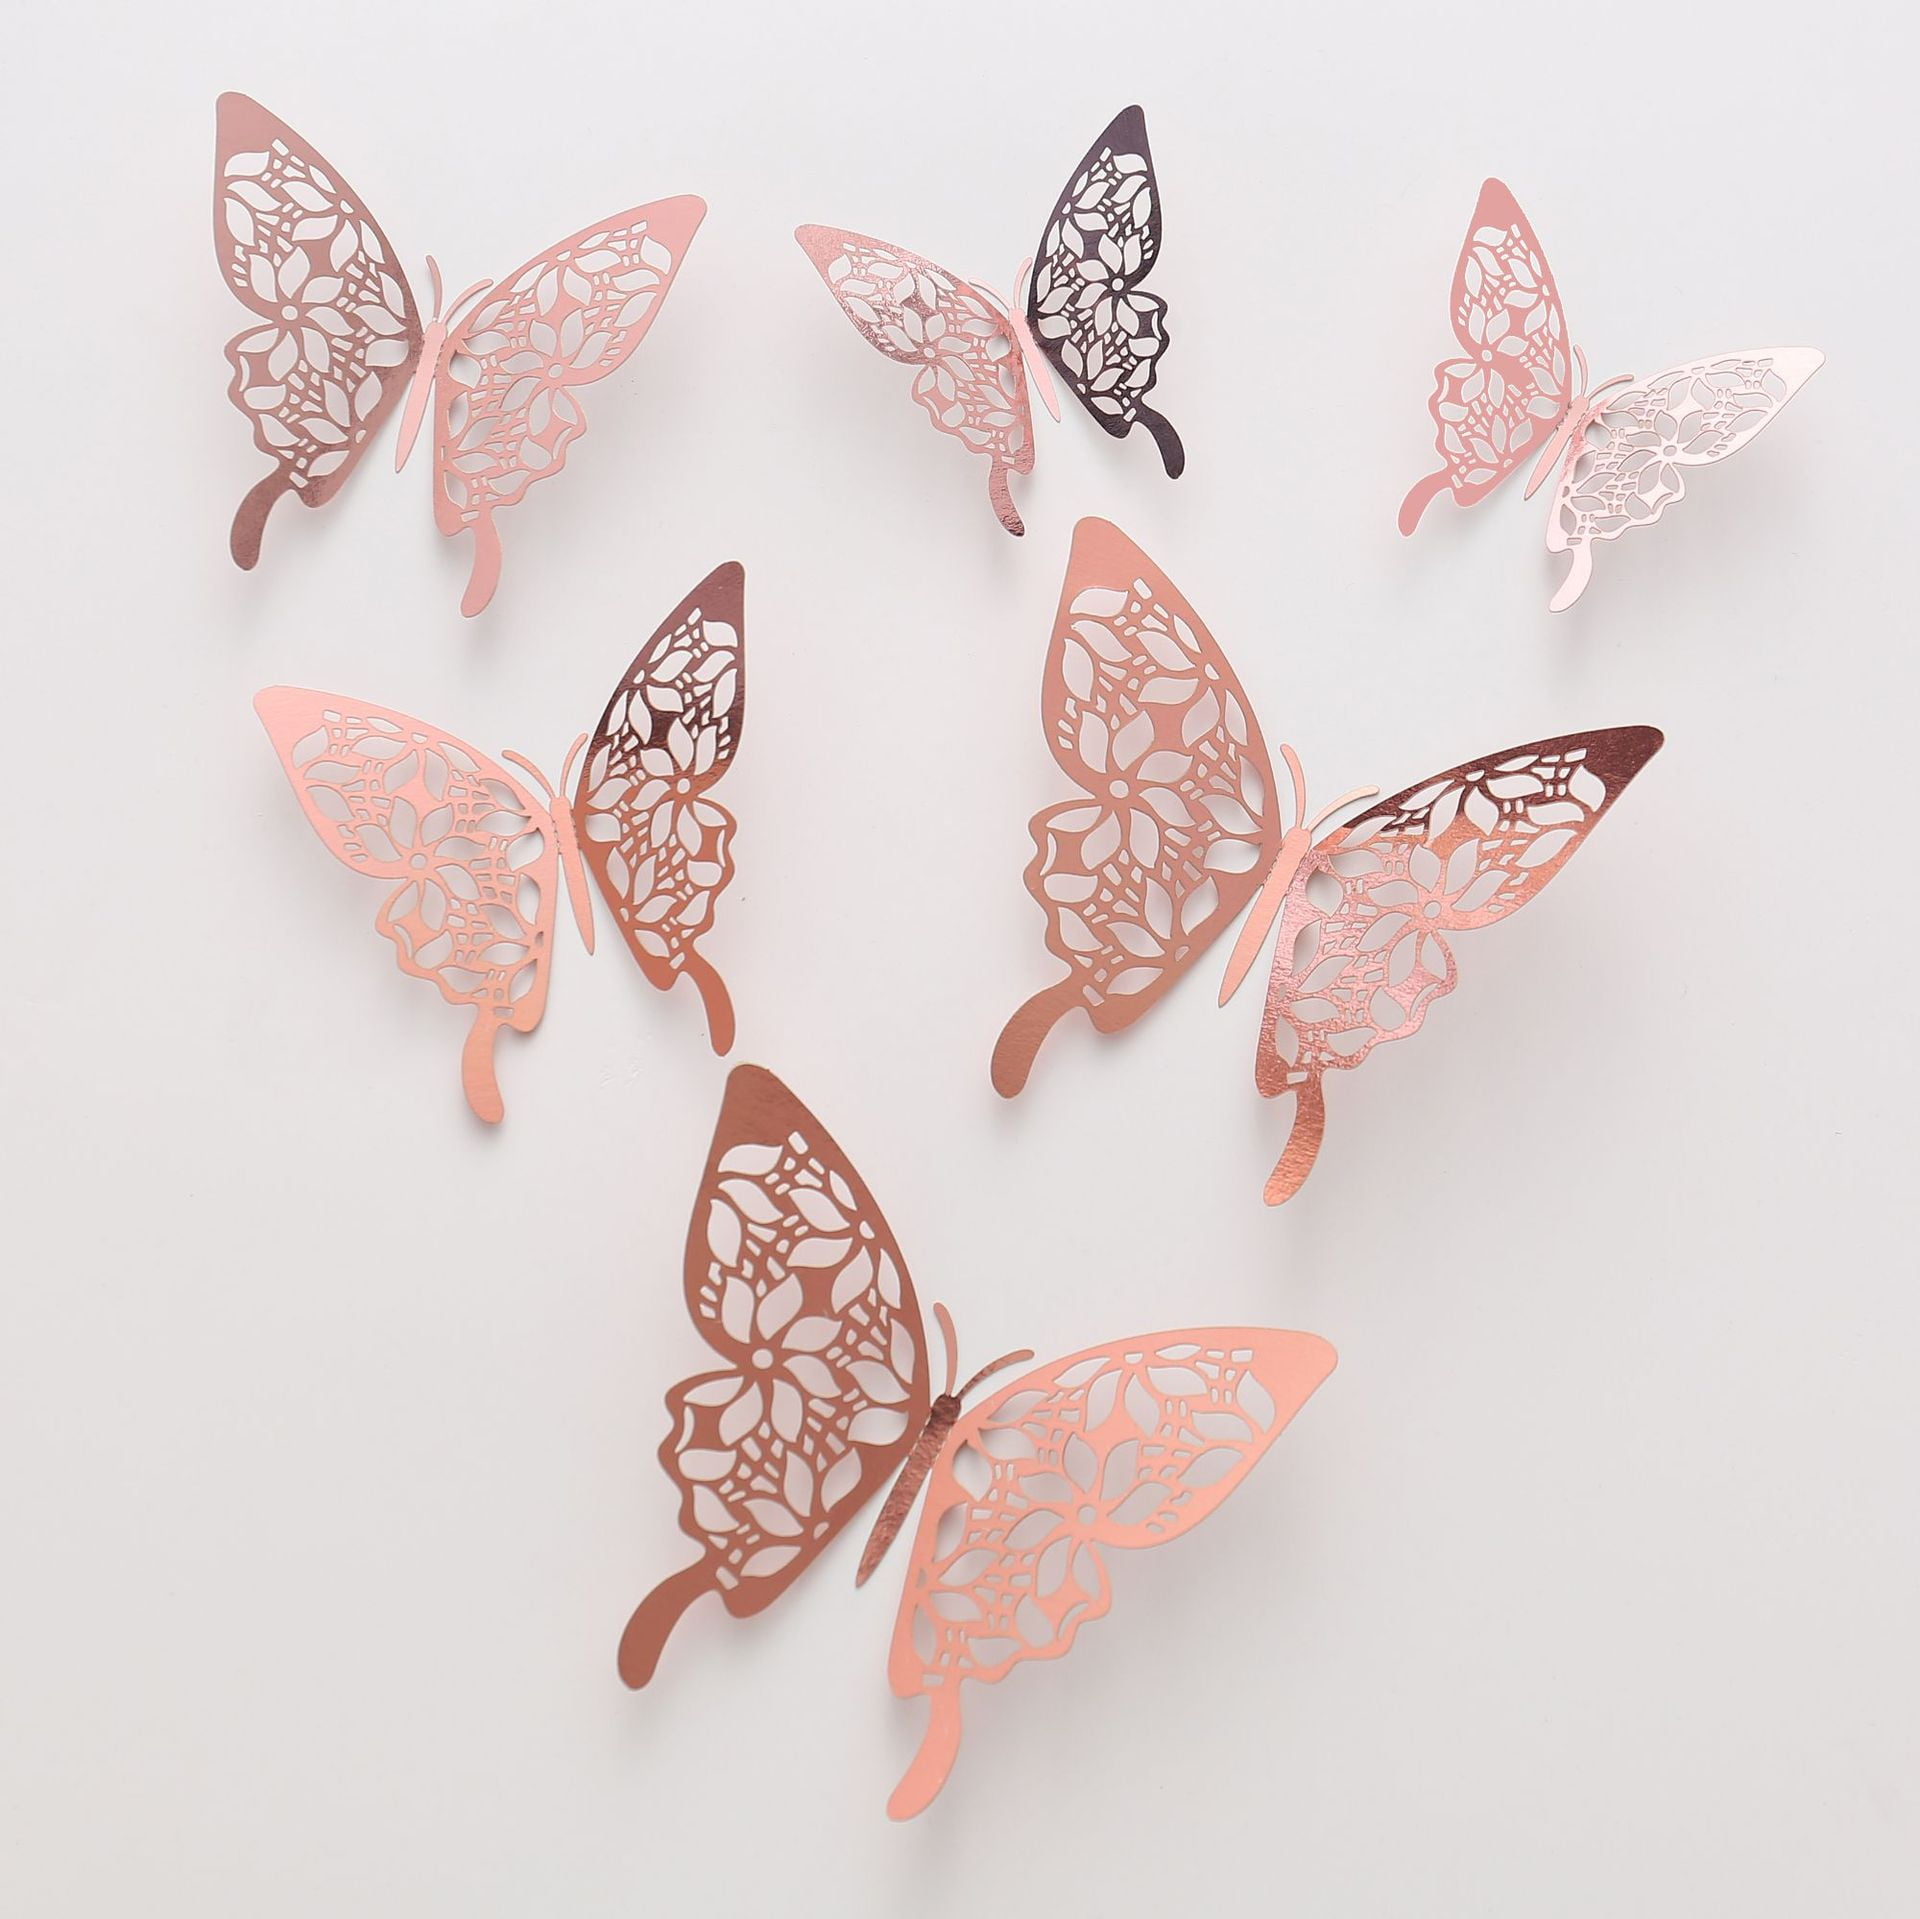 Butterfly stickers 3D for bedroom walls. – Fairytaleschildren